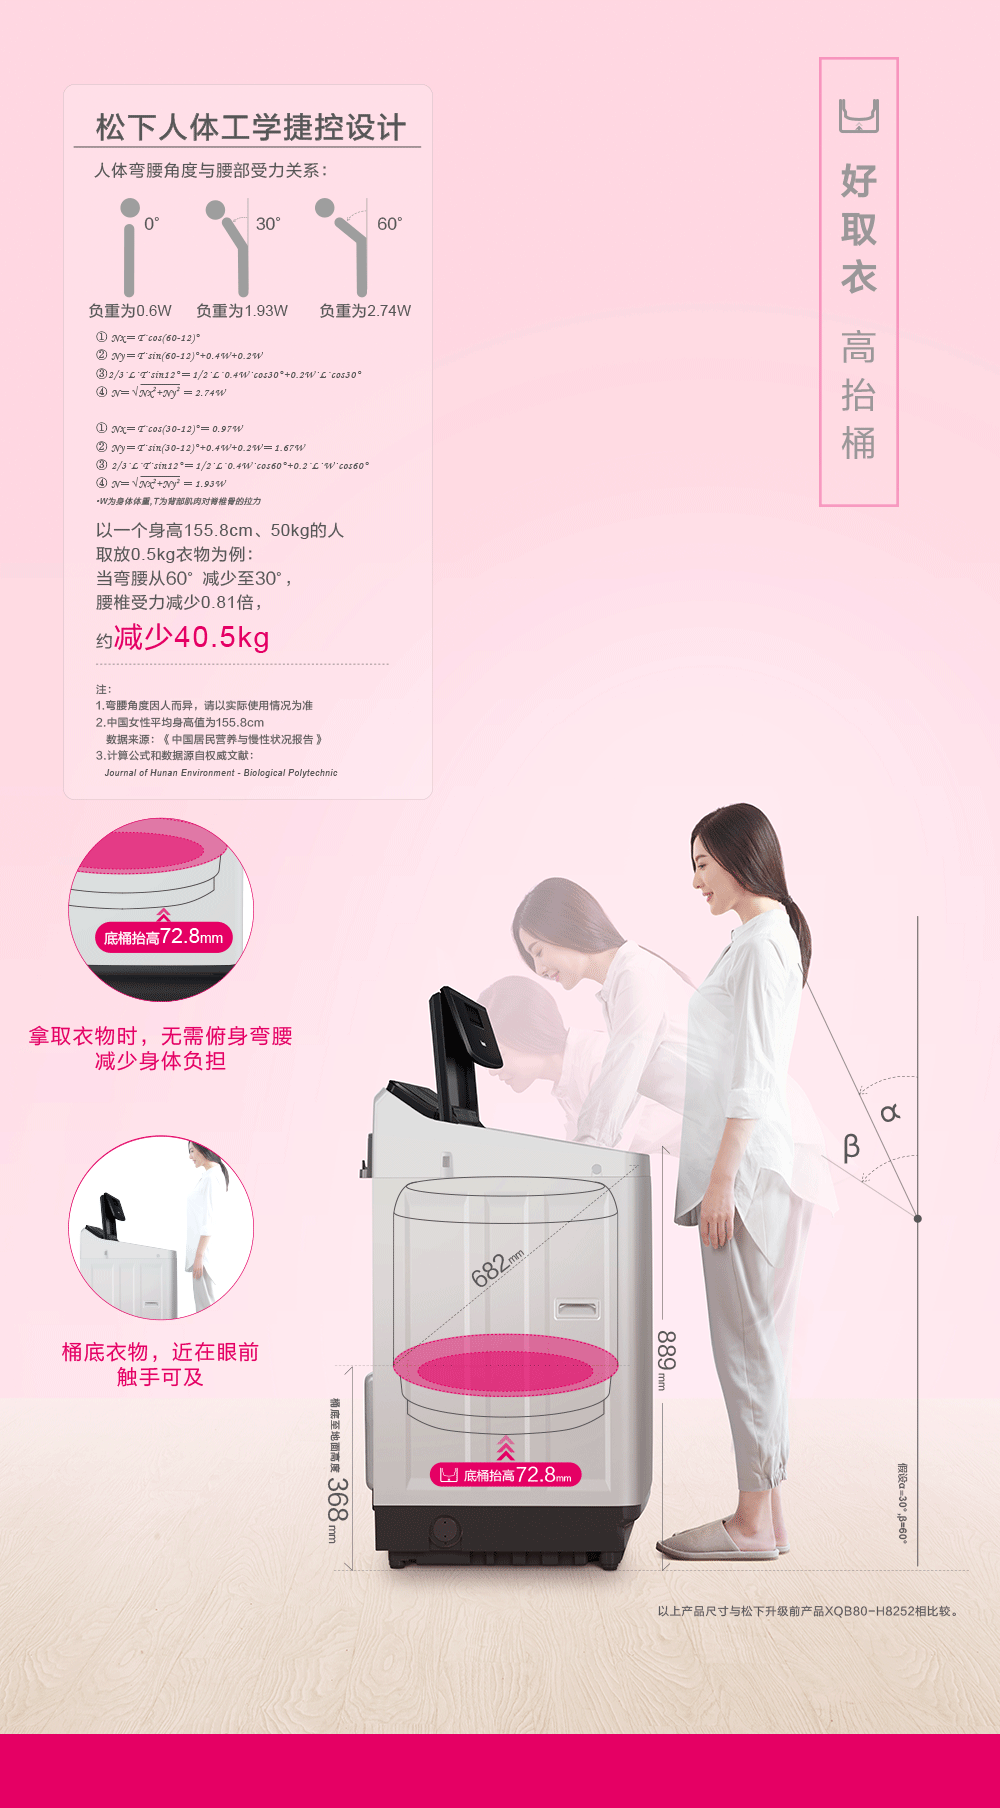 松下洗衣机XQB75-U7421